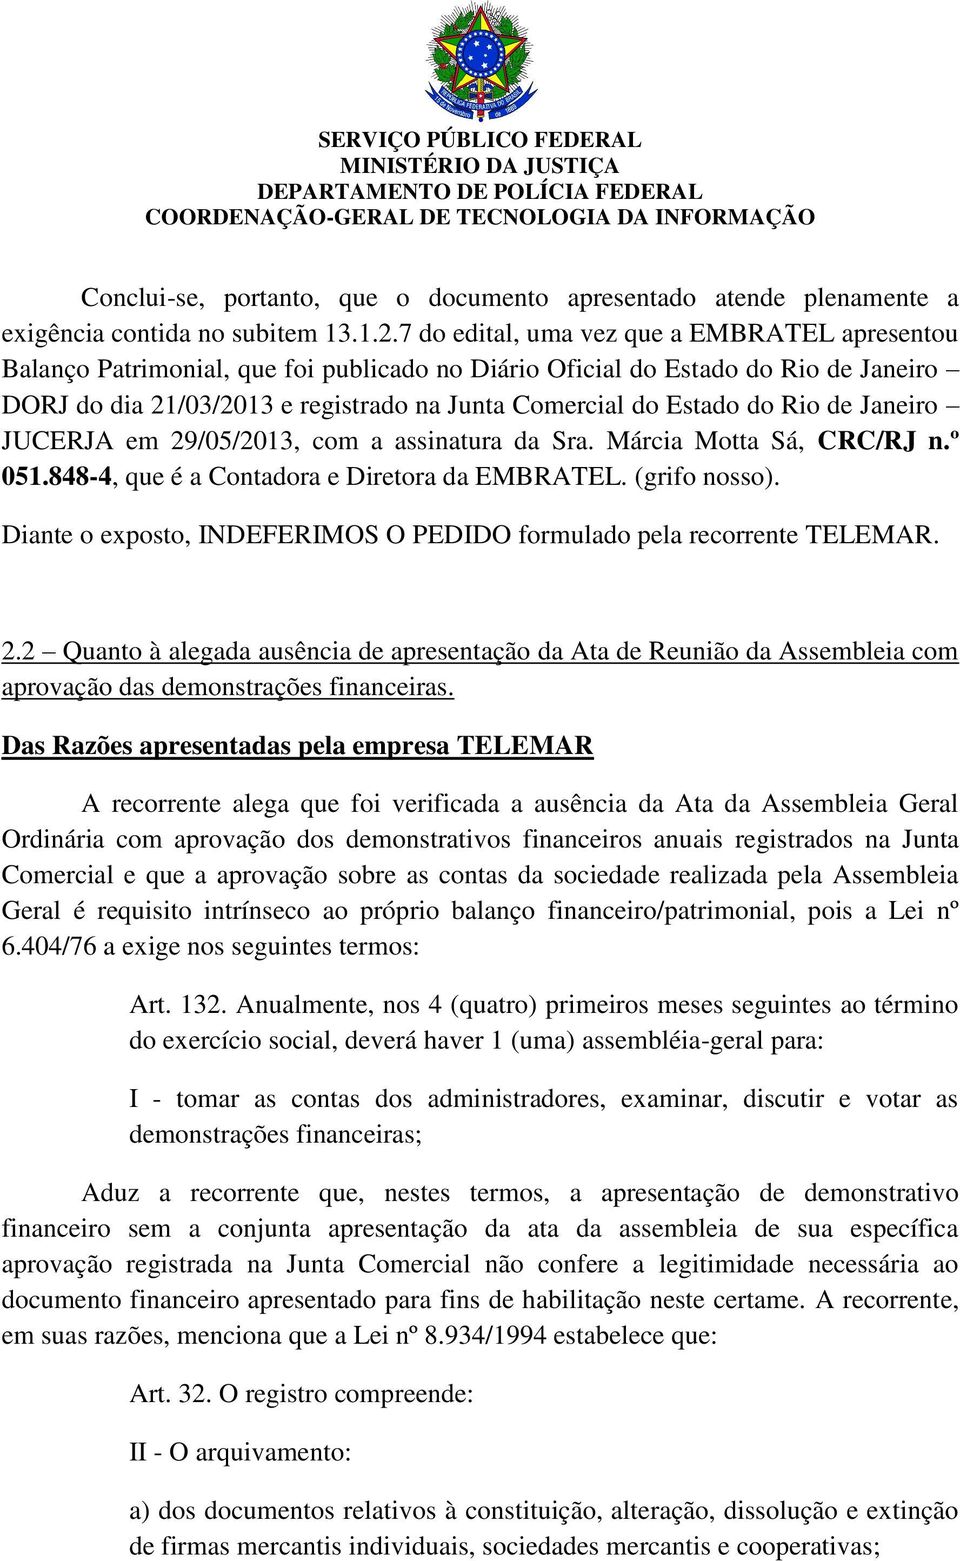 Rio de Janeiro JUCERJA em 29/05/2013, com a assinatura da Sra. Márcia Motta Sá, CRC/RJ n.º 051.848-4, que é a Contadora e Diretora da EMBRATEL. (grifo nosso).